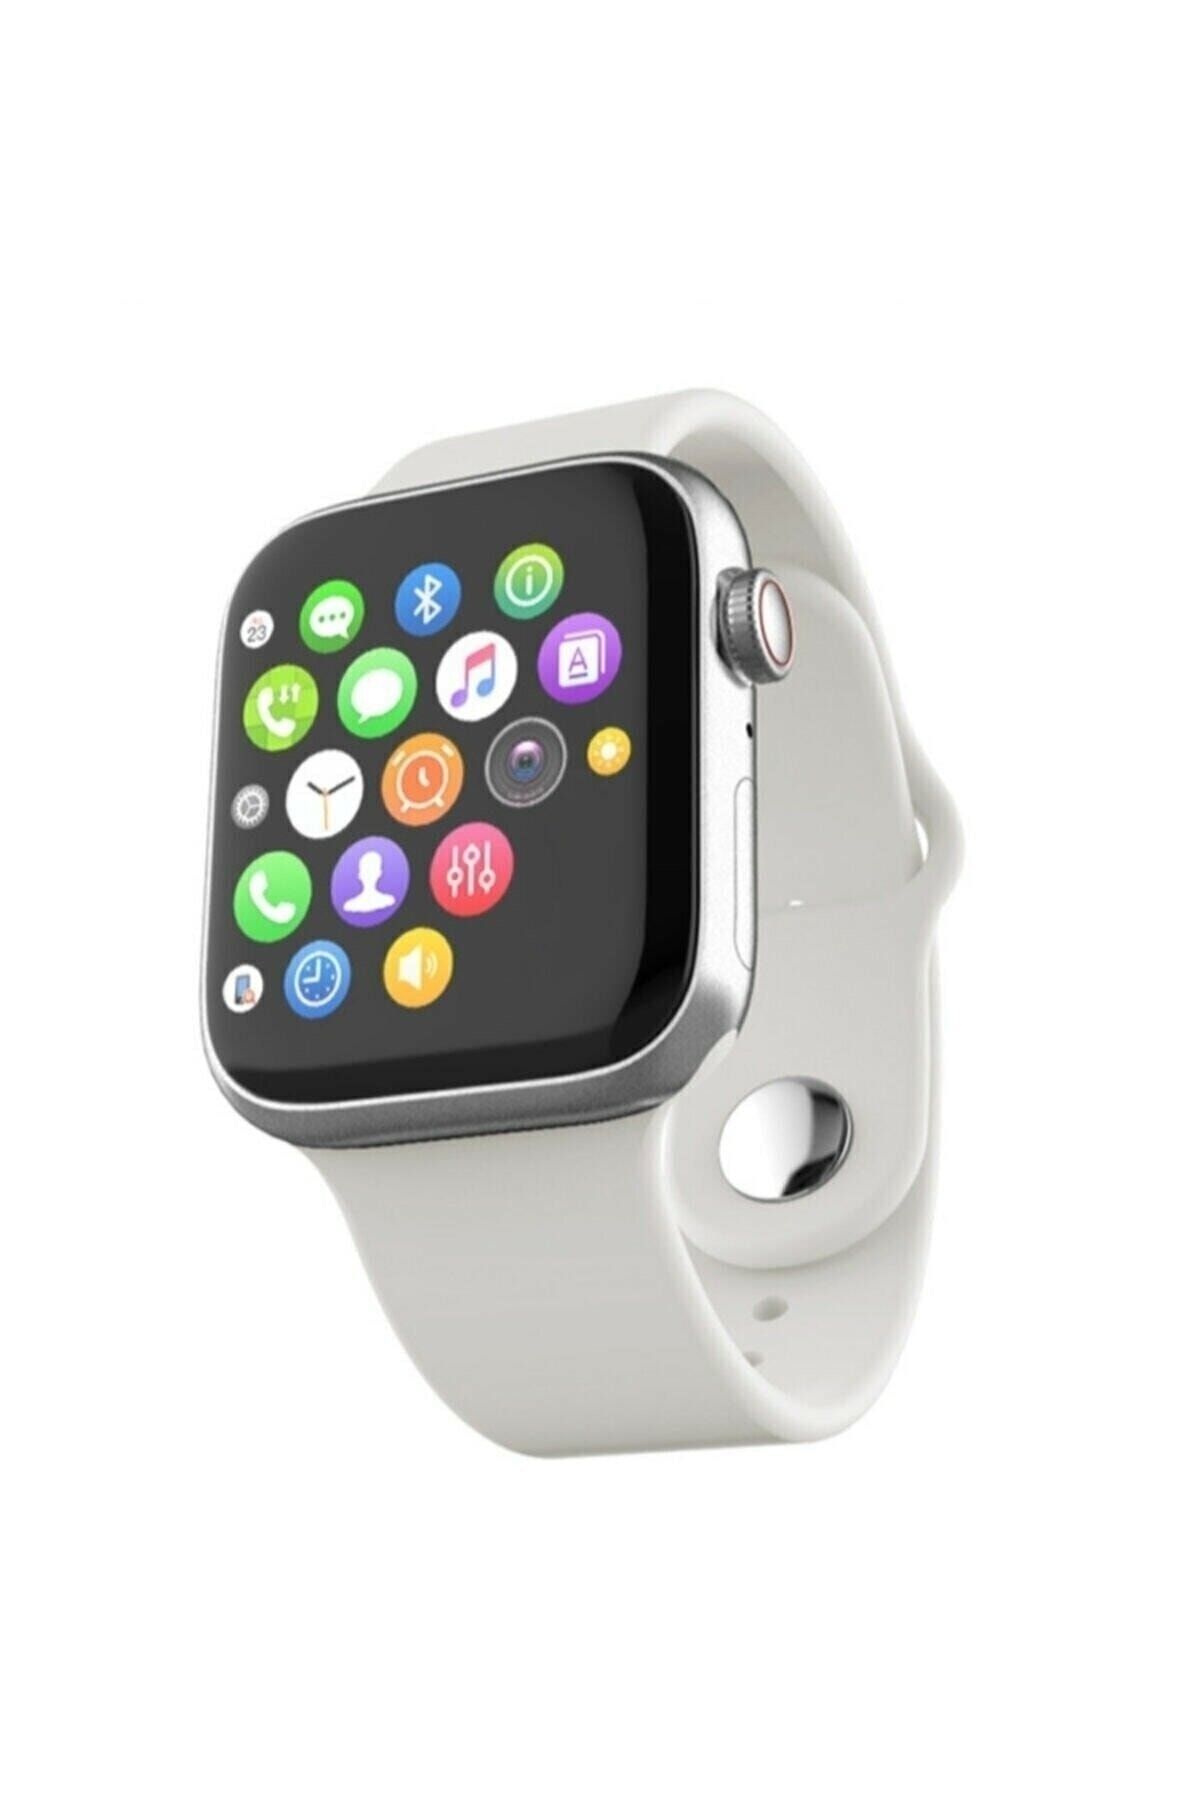 pazariz Watch 7 Series Akıllı Saat Yeni Nesil Şık Tasarımlı Beyaz